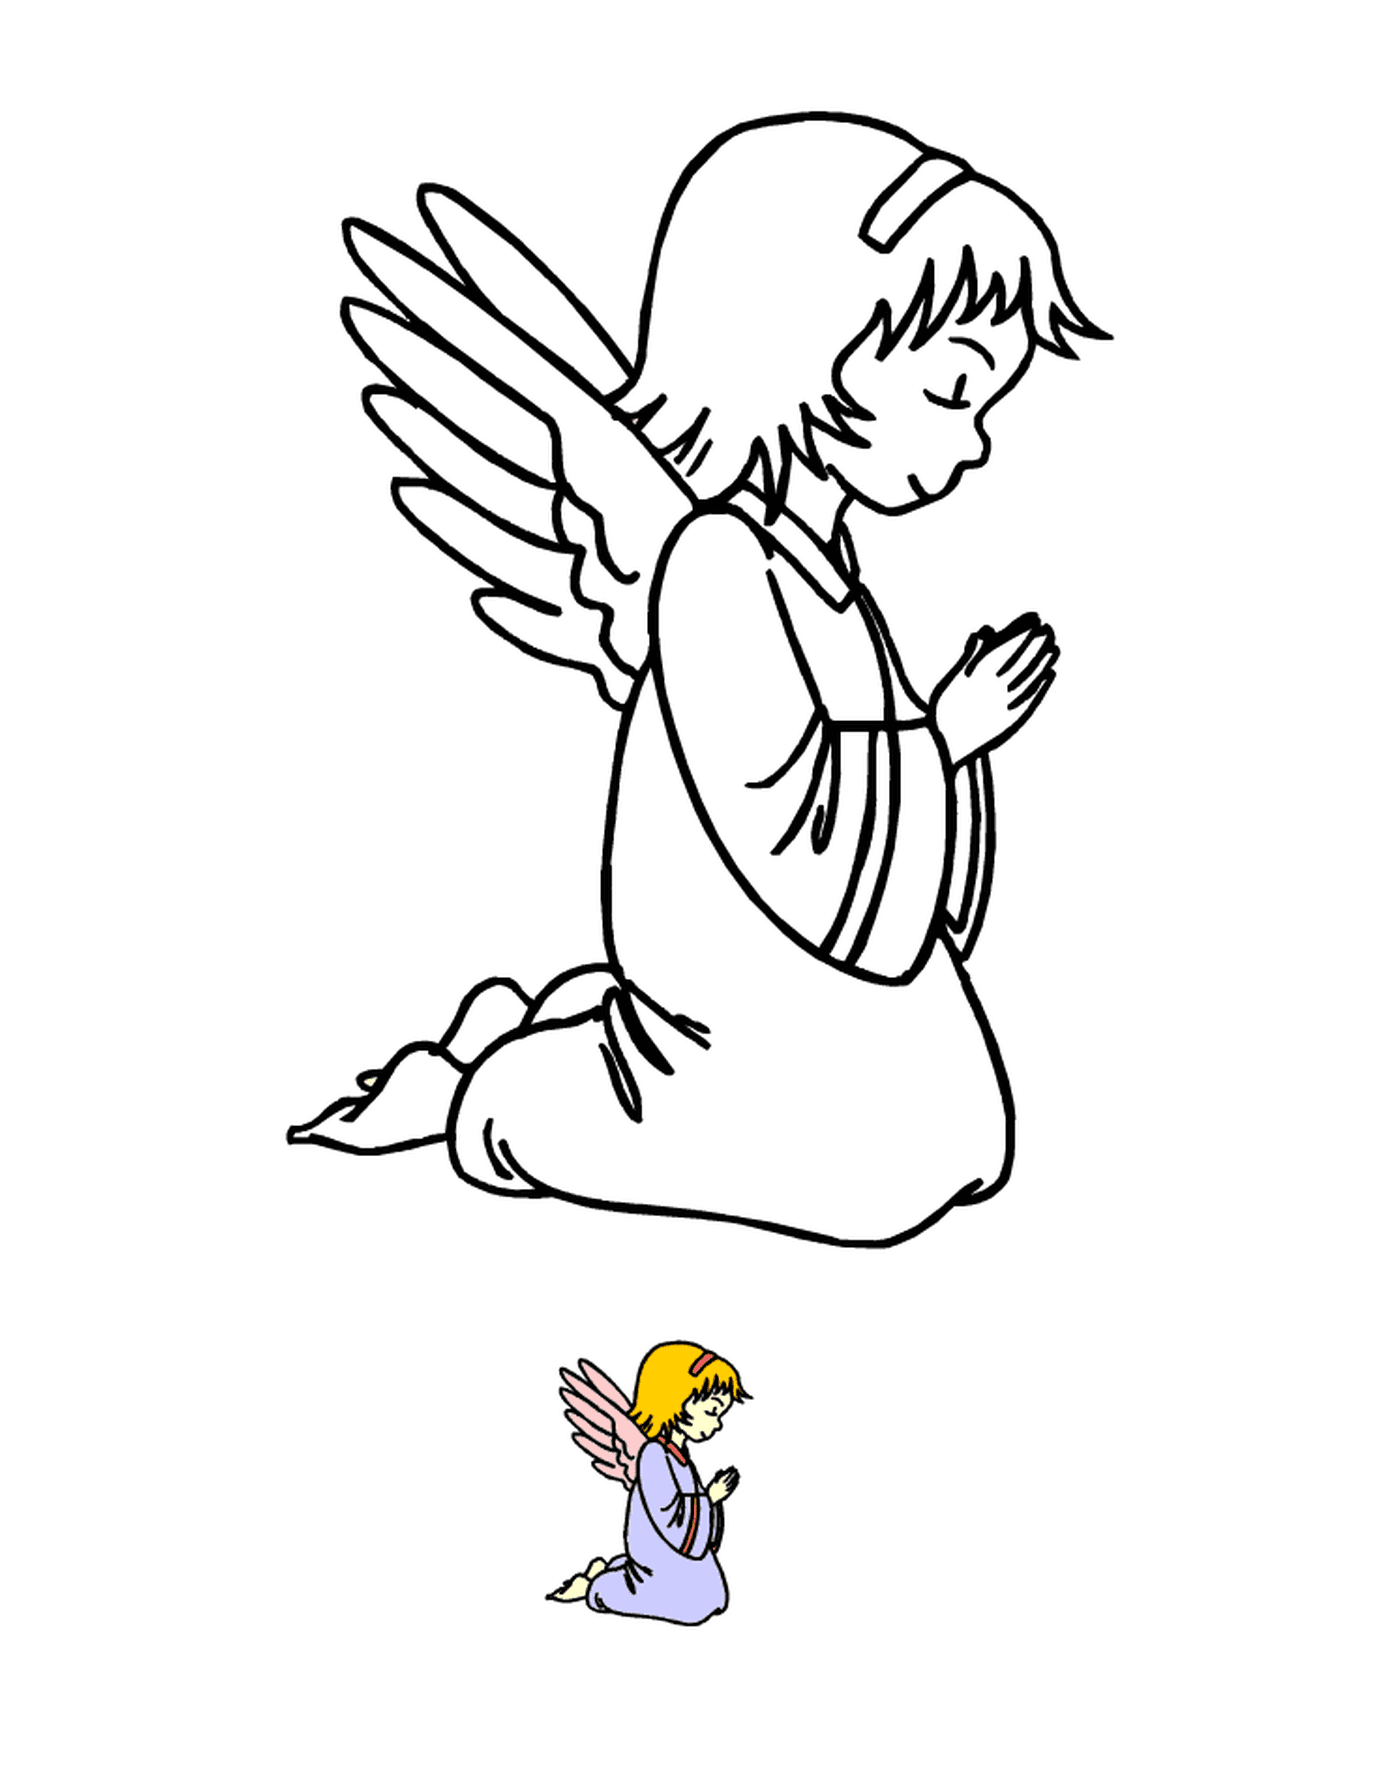  Un angelo inginocchiato in preghiera con un uccello nelle vicinanze 